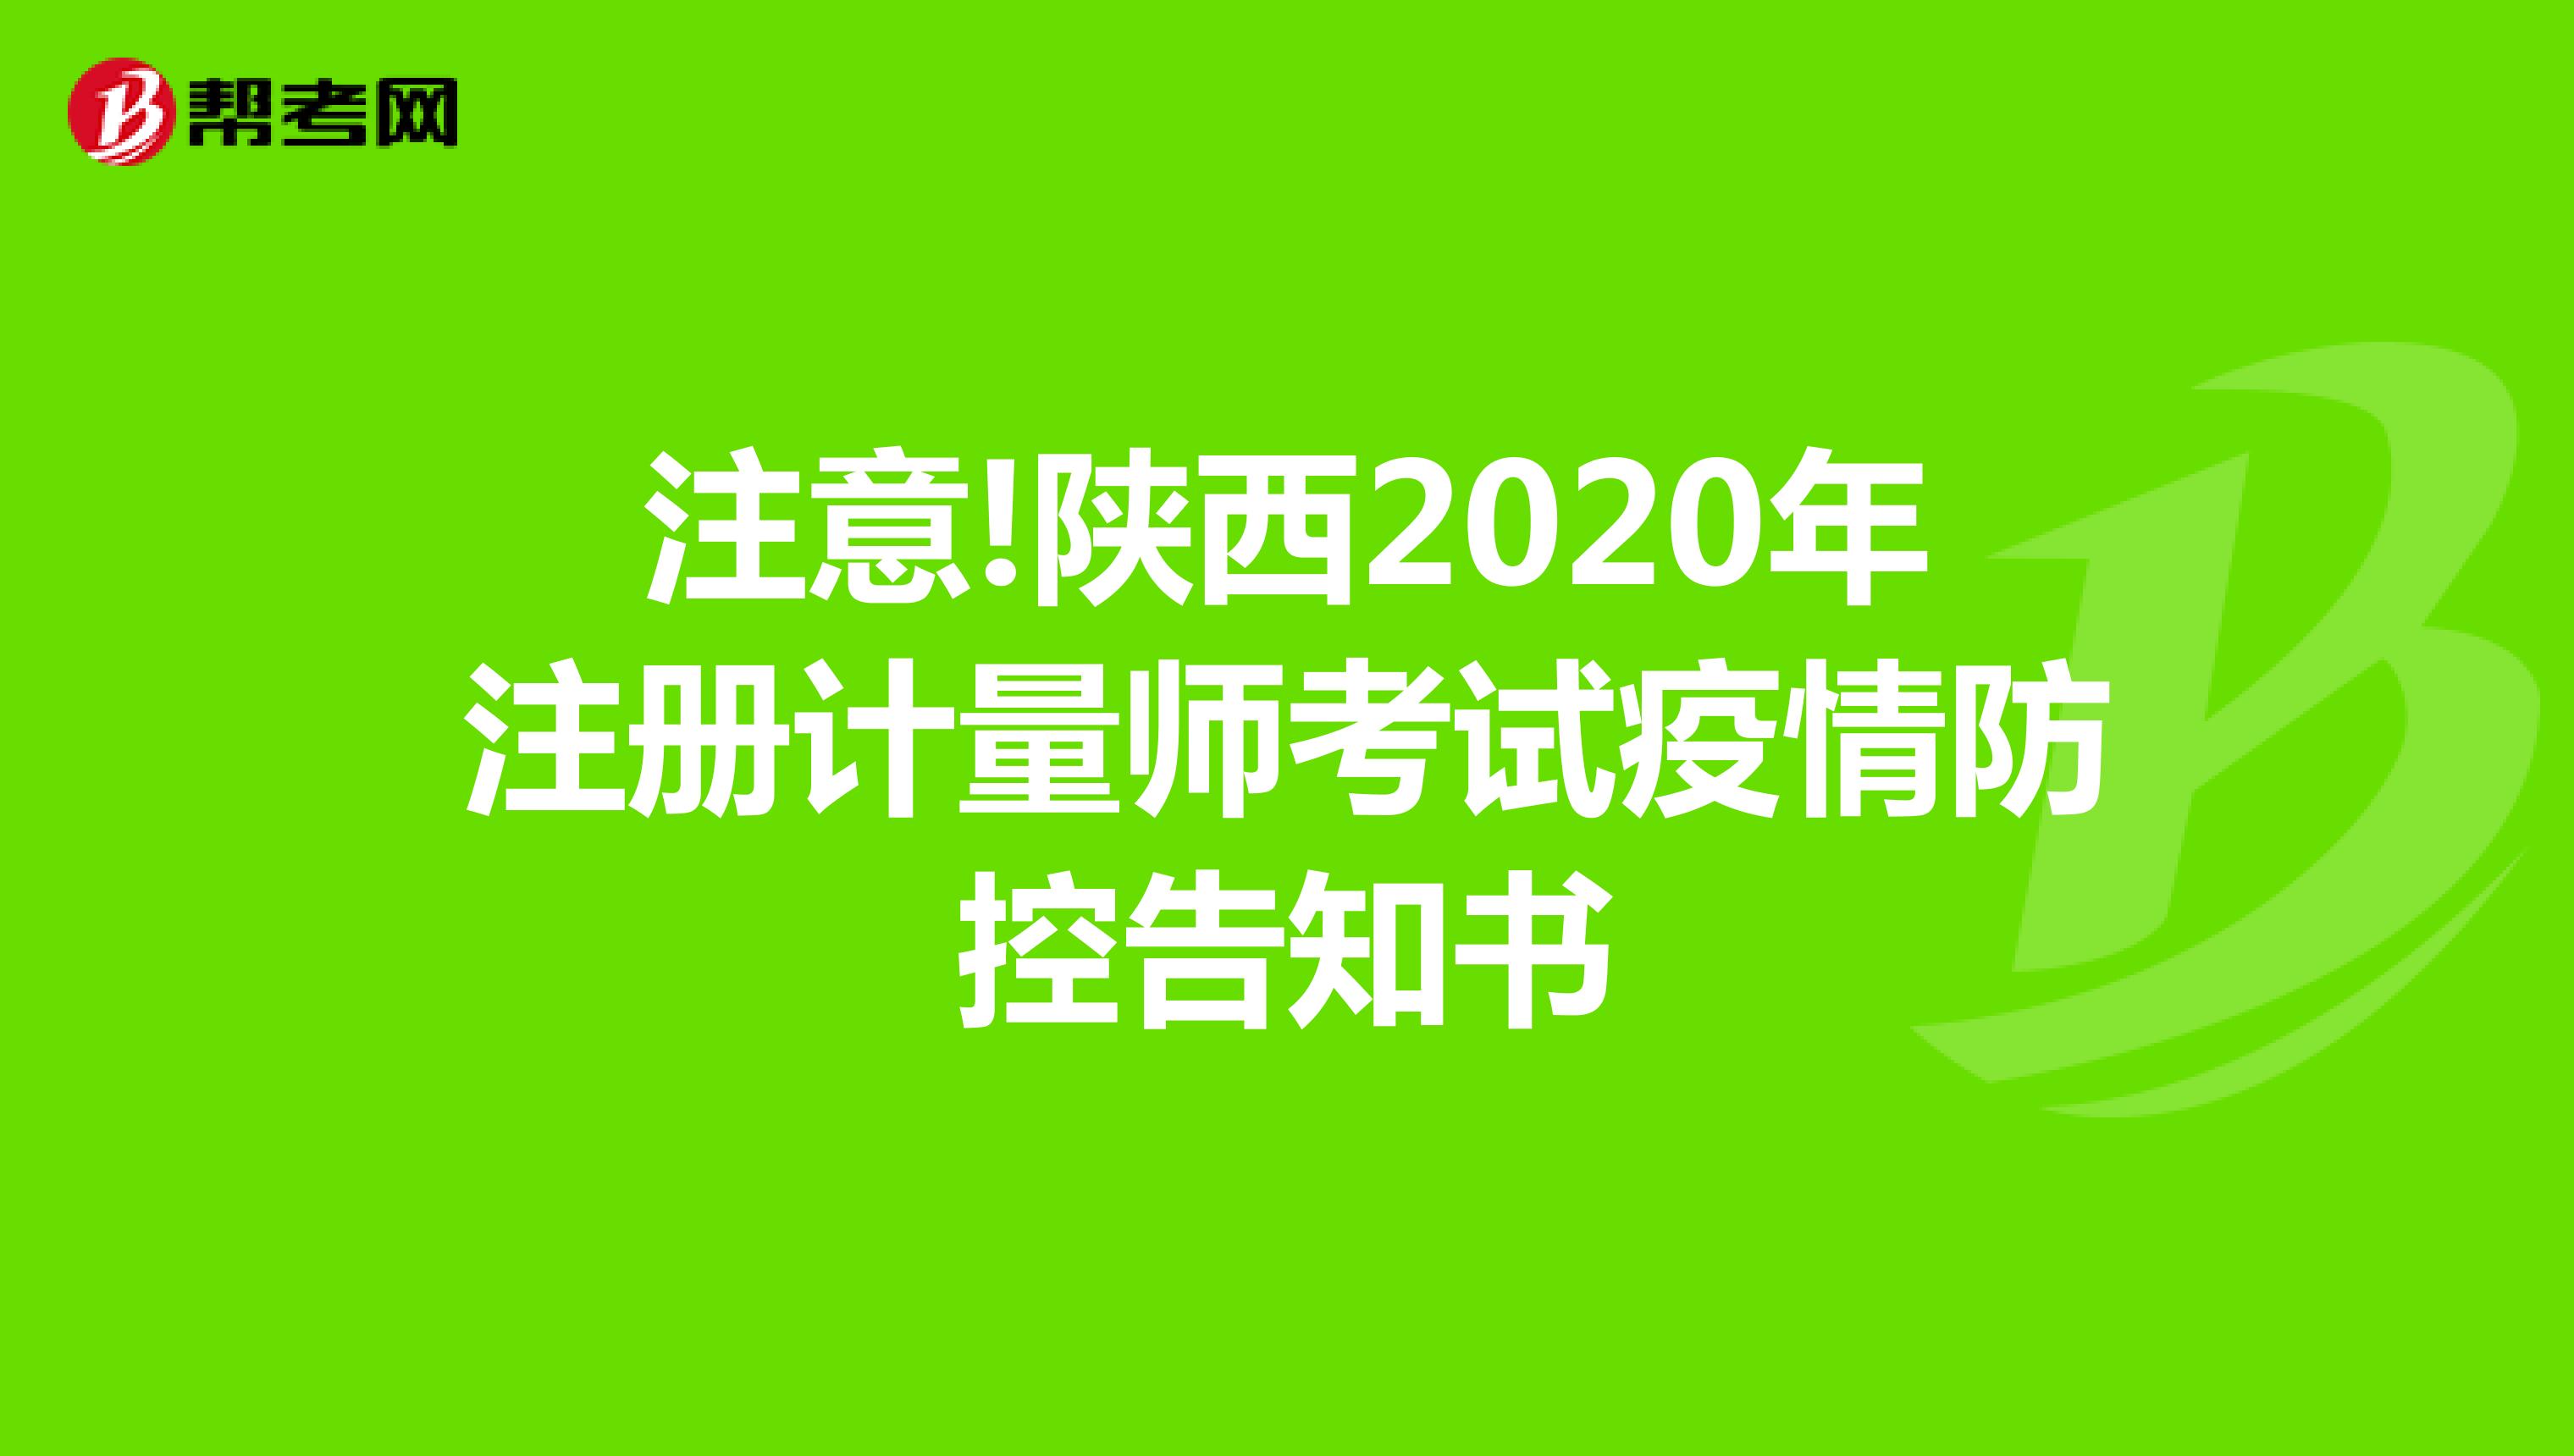 注意!陕西2020年注册计量师考试疫情防控告知书